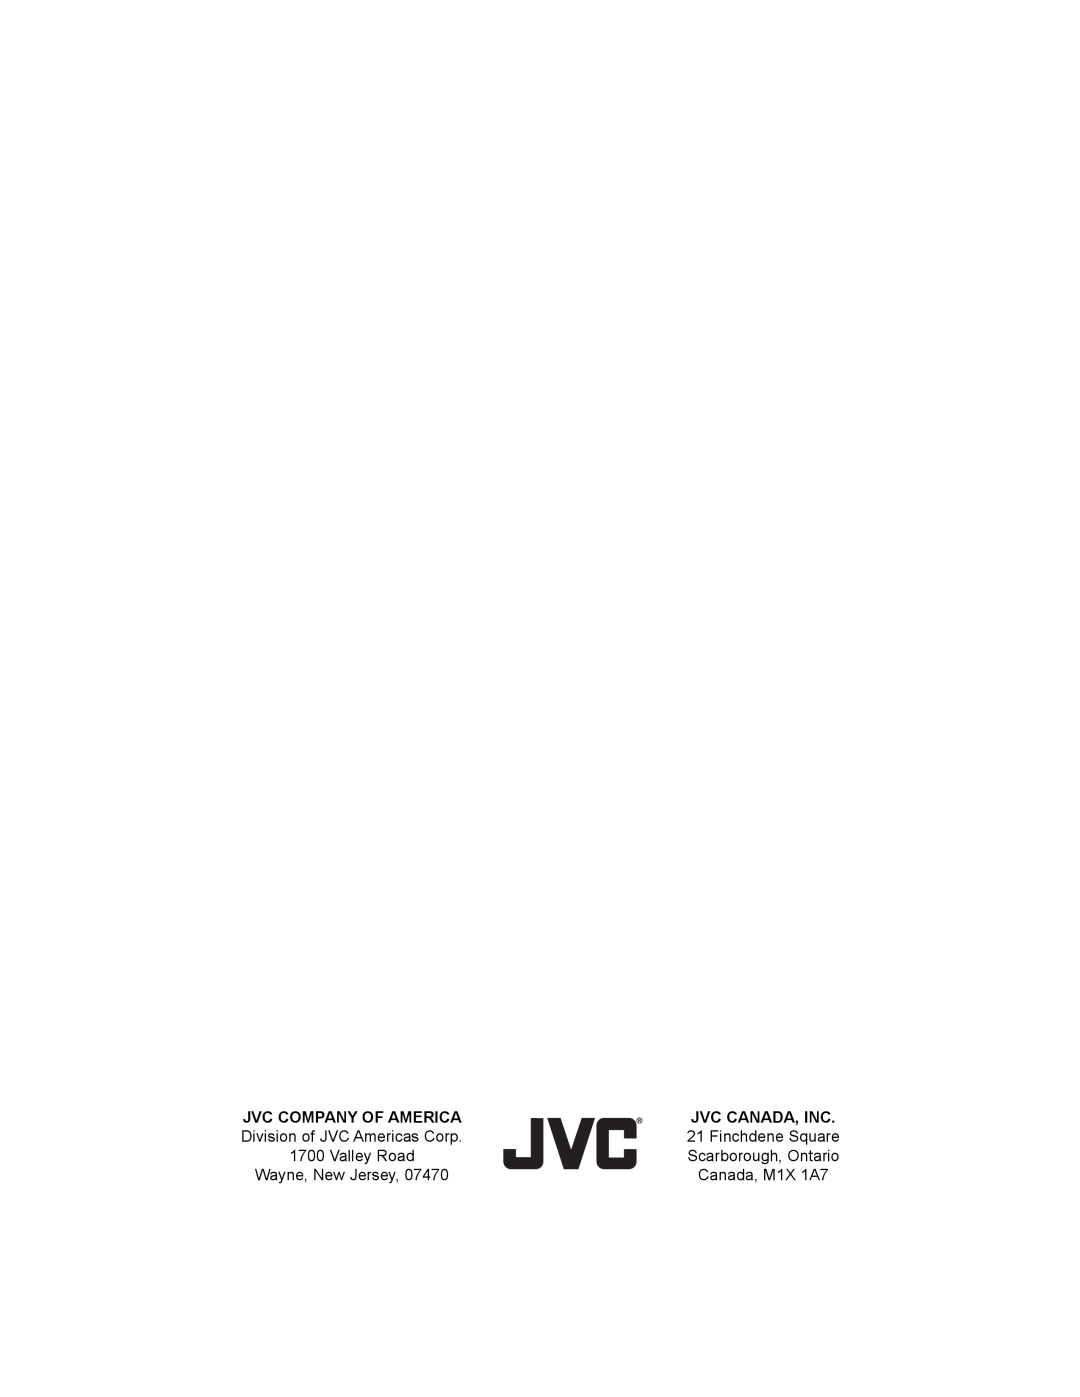 JVC AV 30W476 manual Jvc Company Of America, Jvc Canada, Inc, Canada, M1X 1A7 